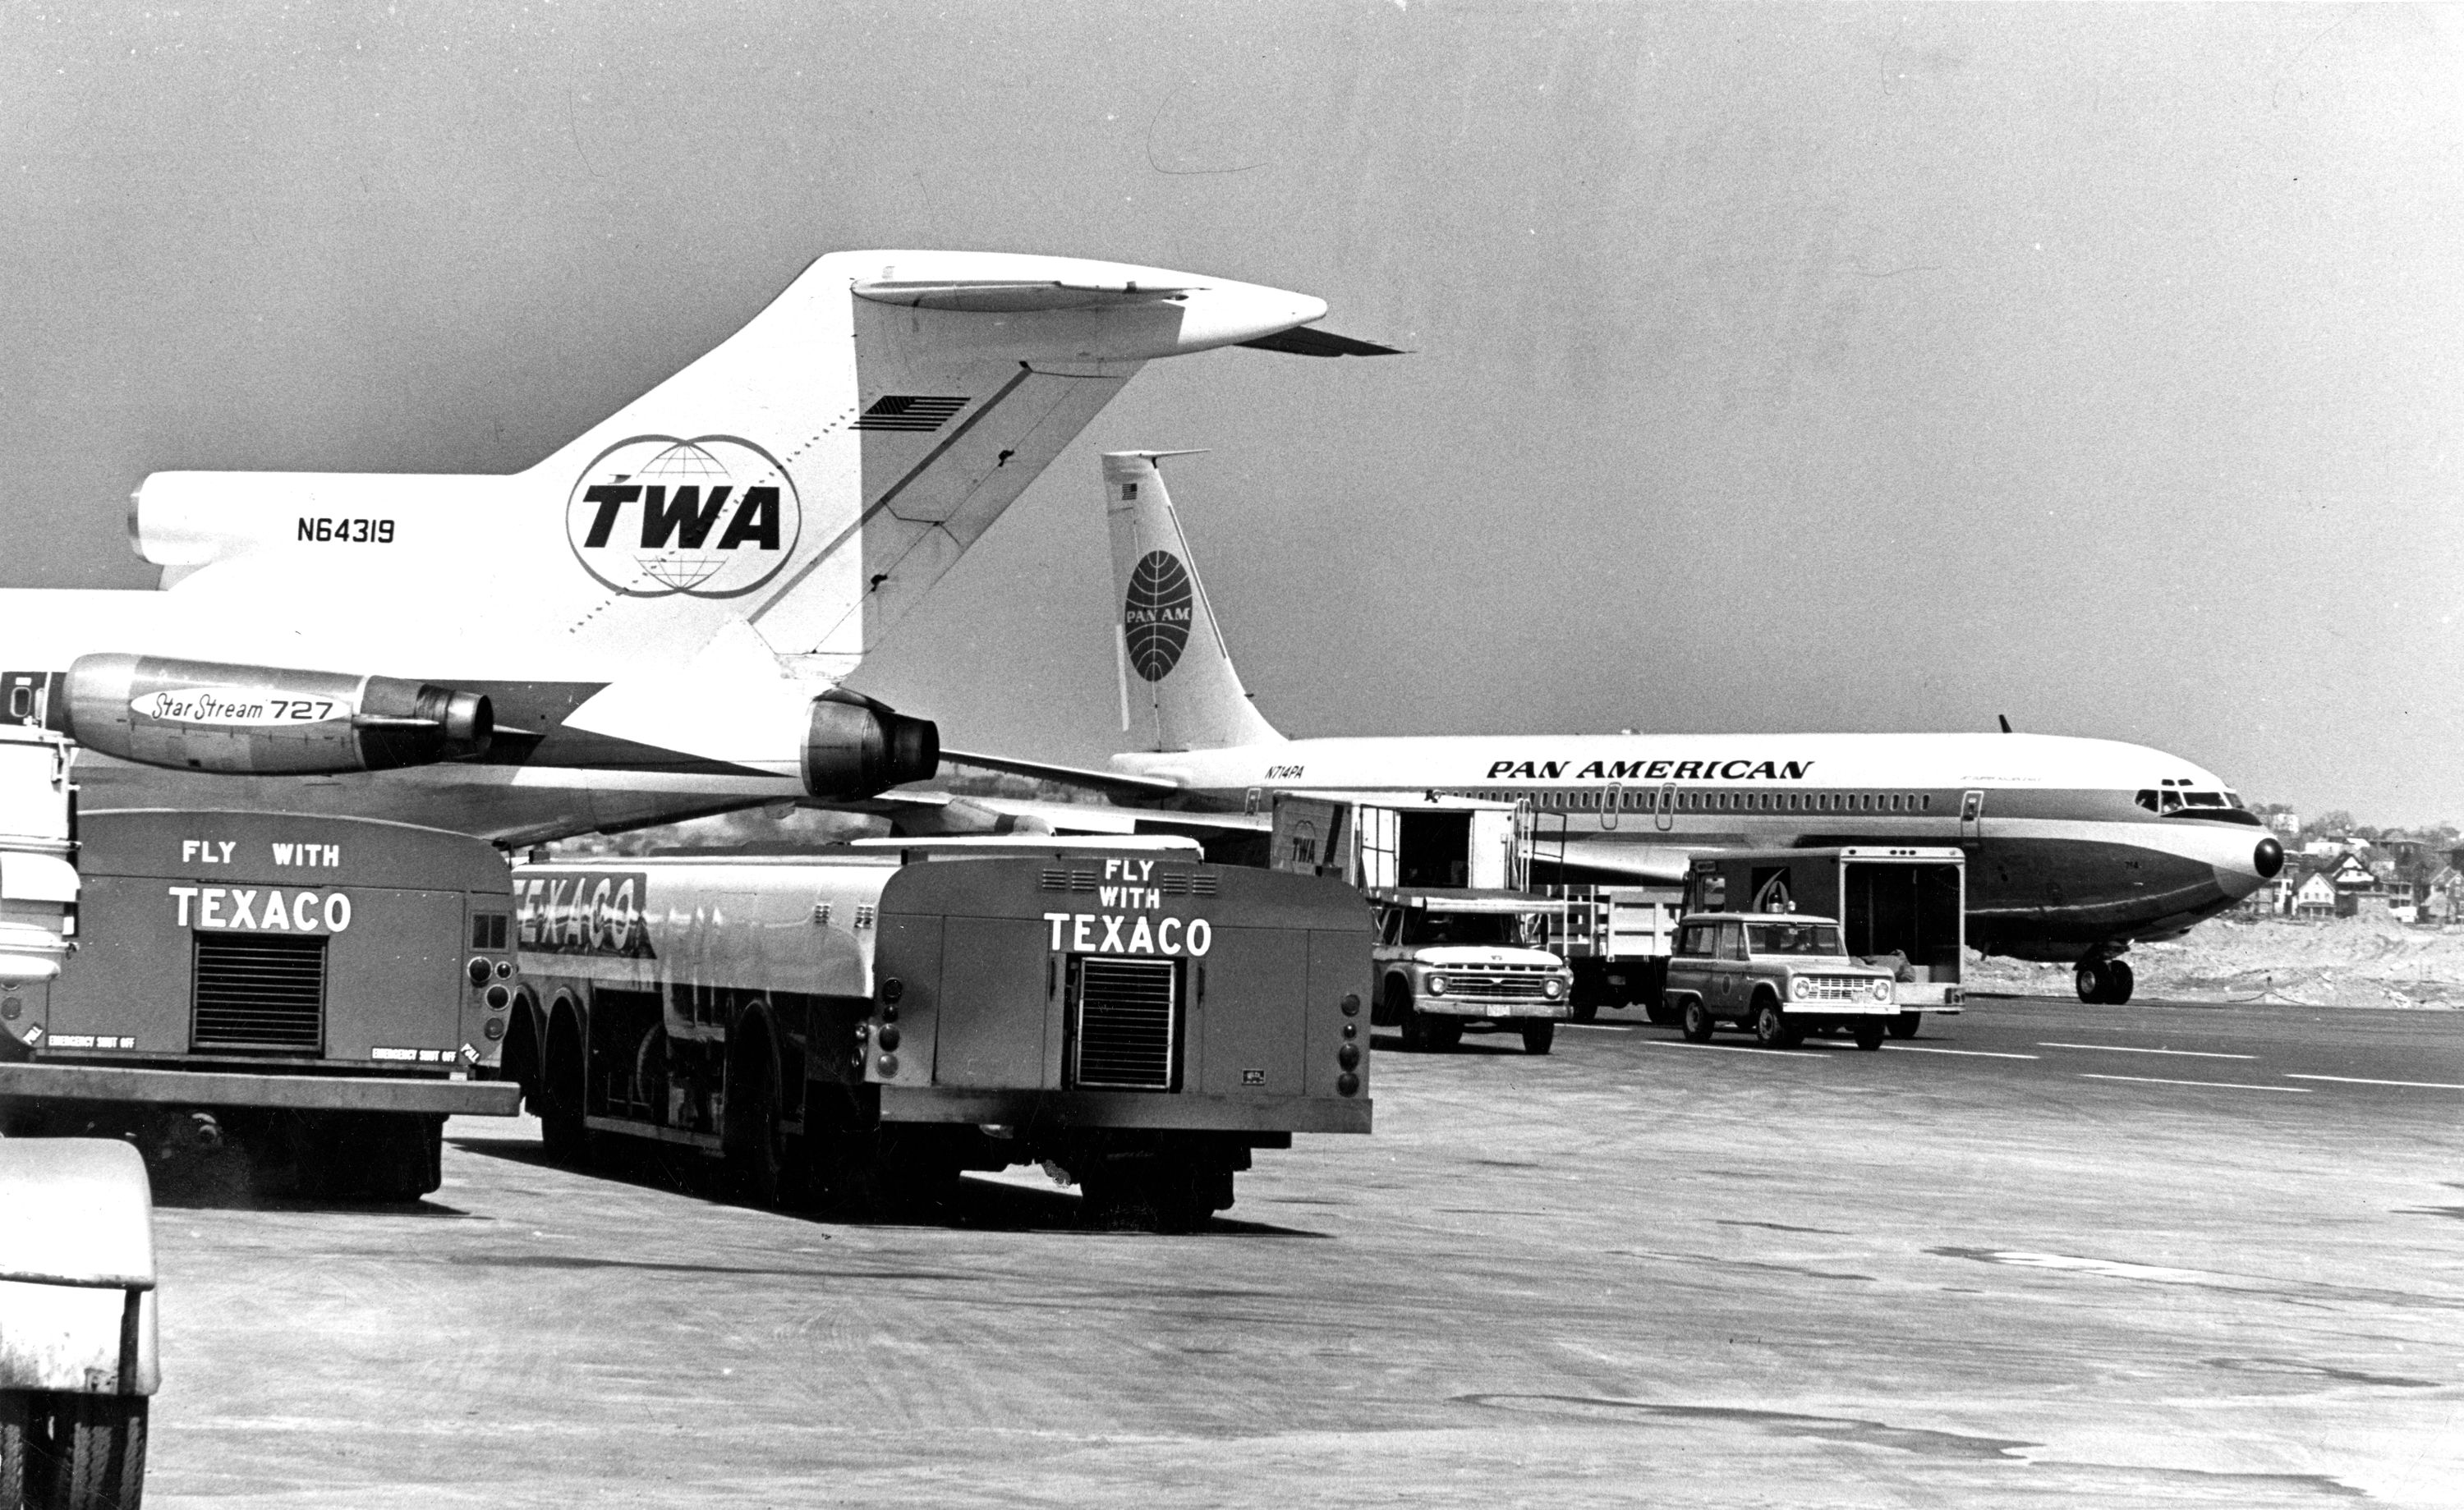 Pan Am and TWA